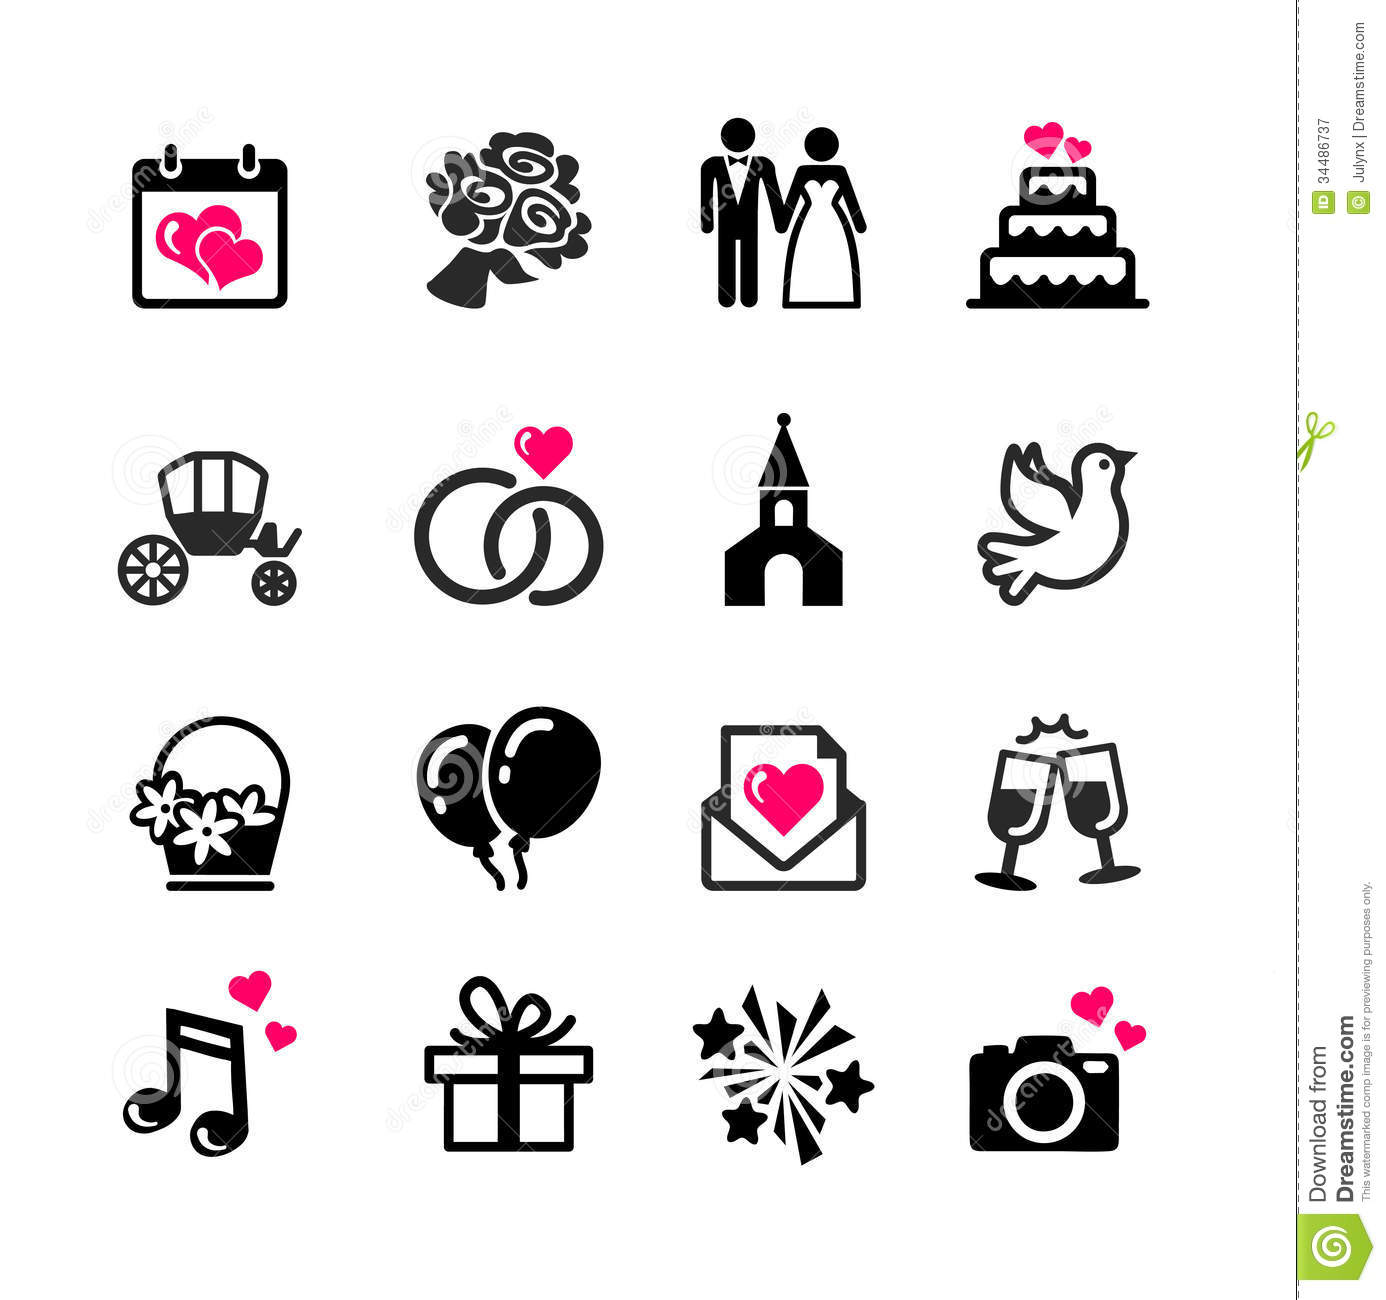 Wedding Toast Clipart 16 Web Icons Set   Wedding